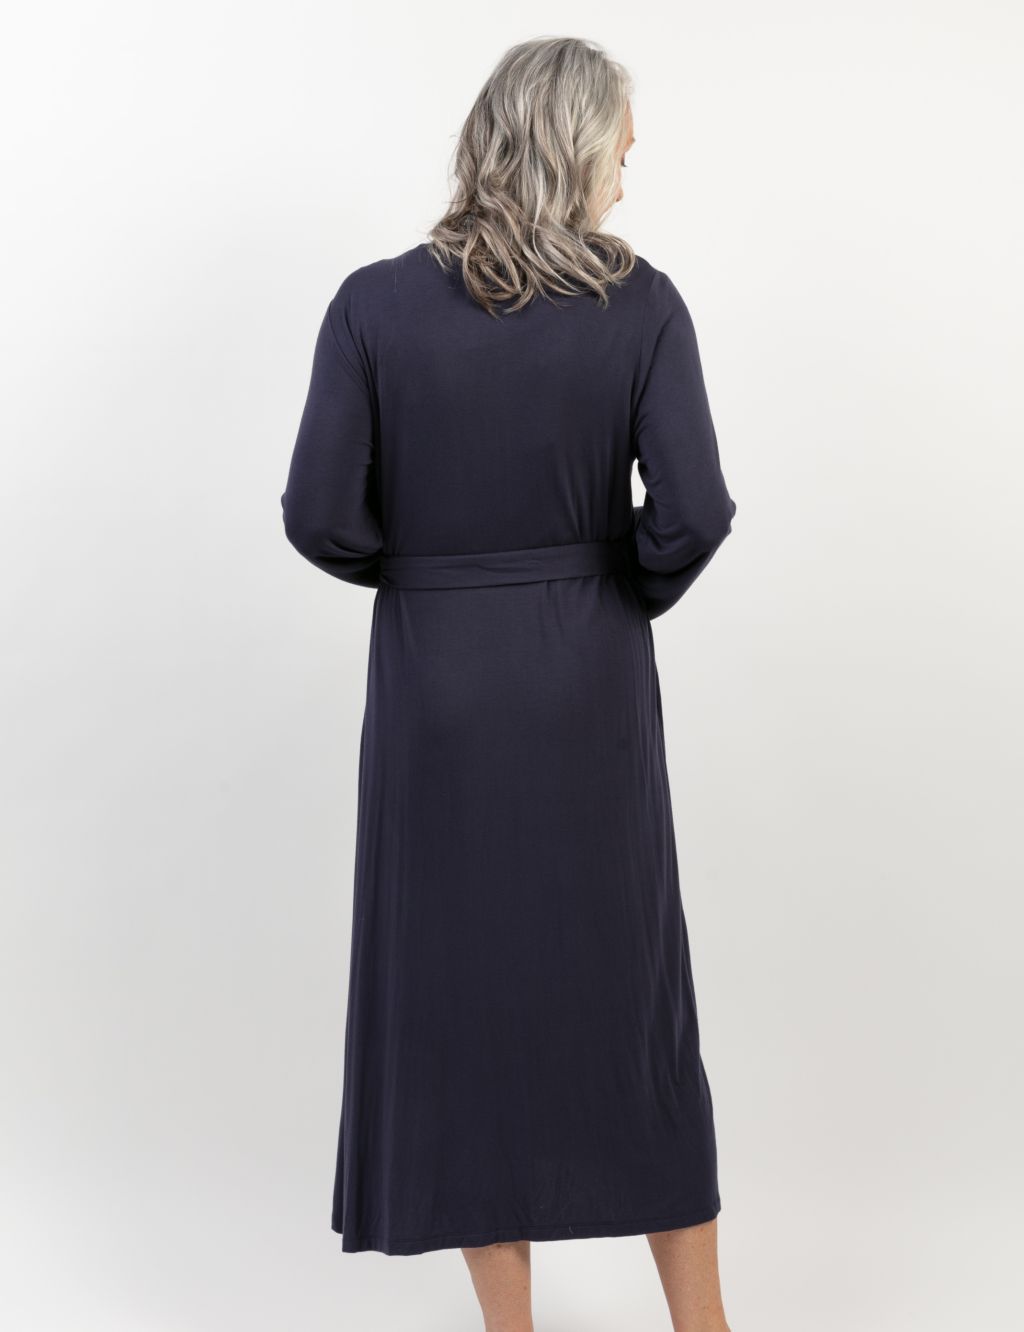 Modal Rich Lace Trim Long Dressing Gown image 3